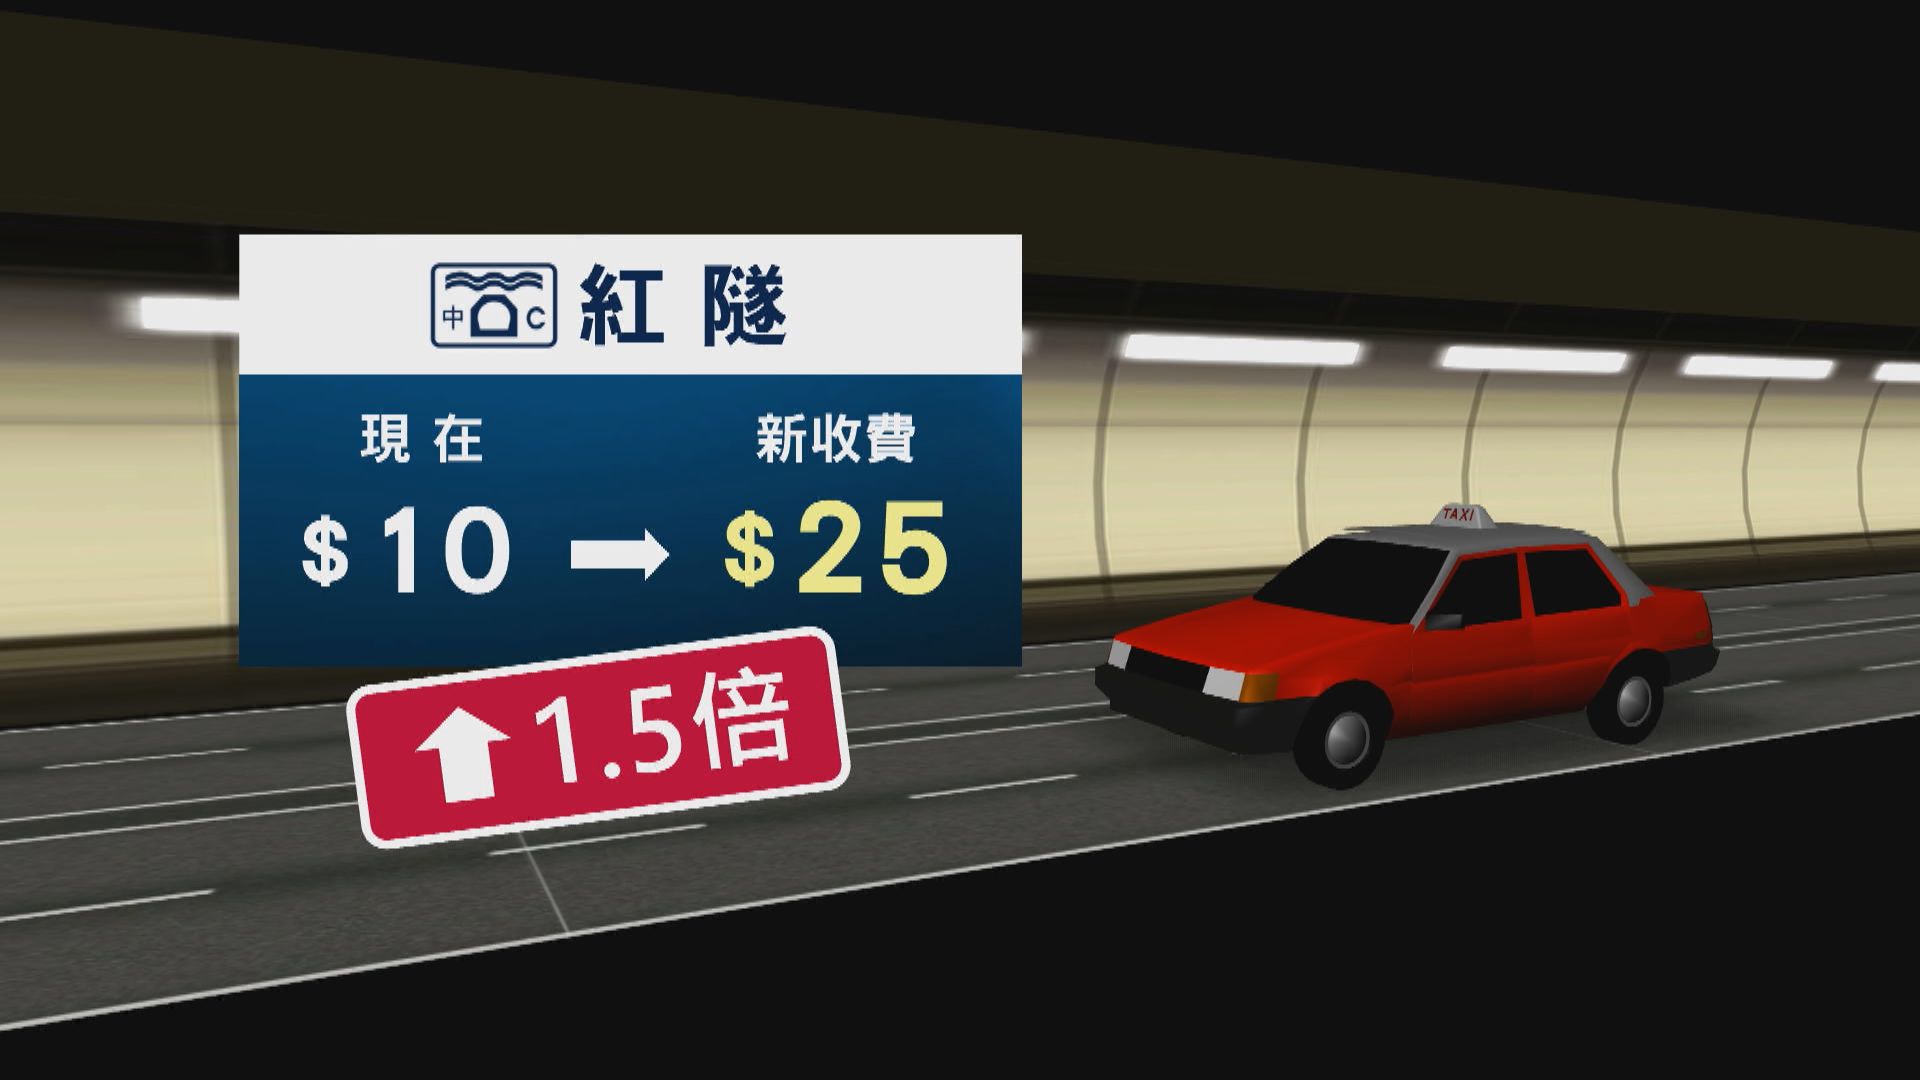 消息：西隧私家車新收費60元、紅隧東隧收30元